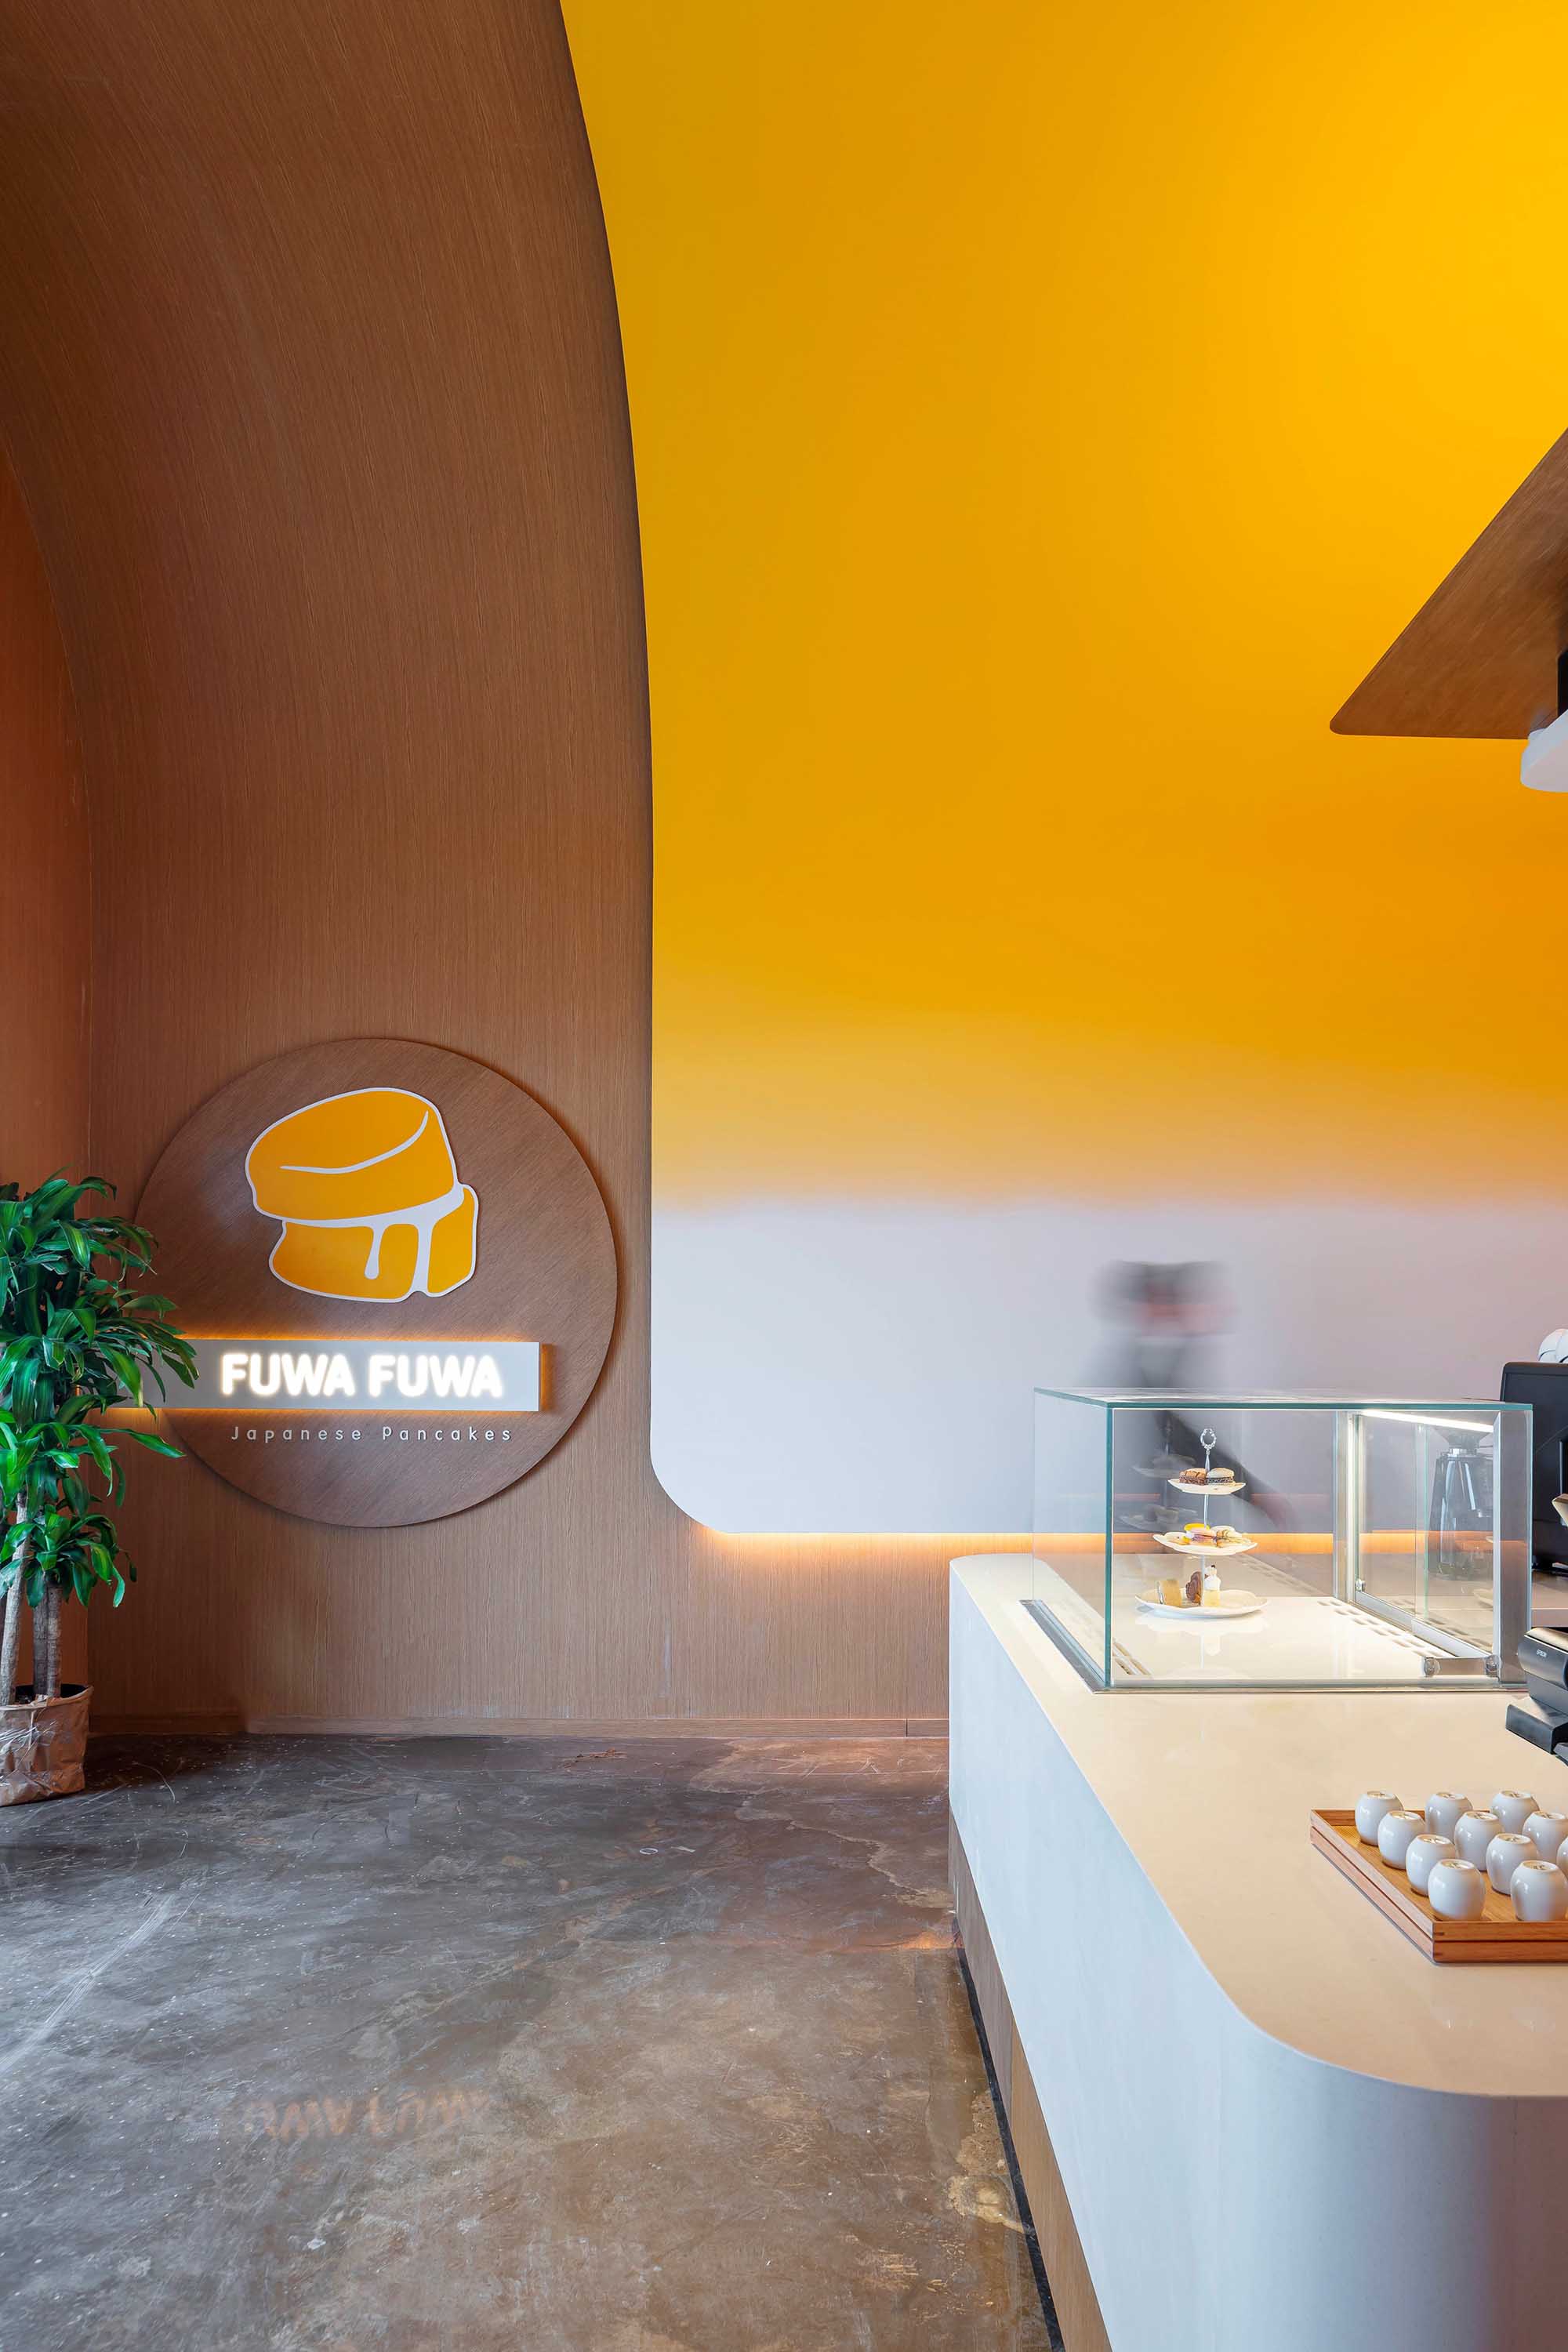 咖啡店设计,Studio Yimu,咖啡店设计案例,加拿大,Fuwa Fuwa,小咖啡店设计,咖啡厅,国外咖啡厅设计案例